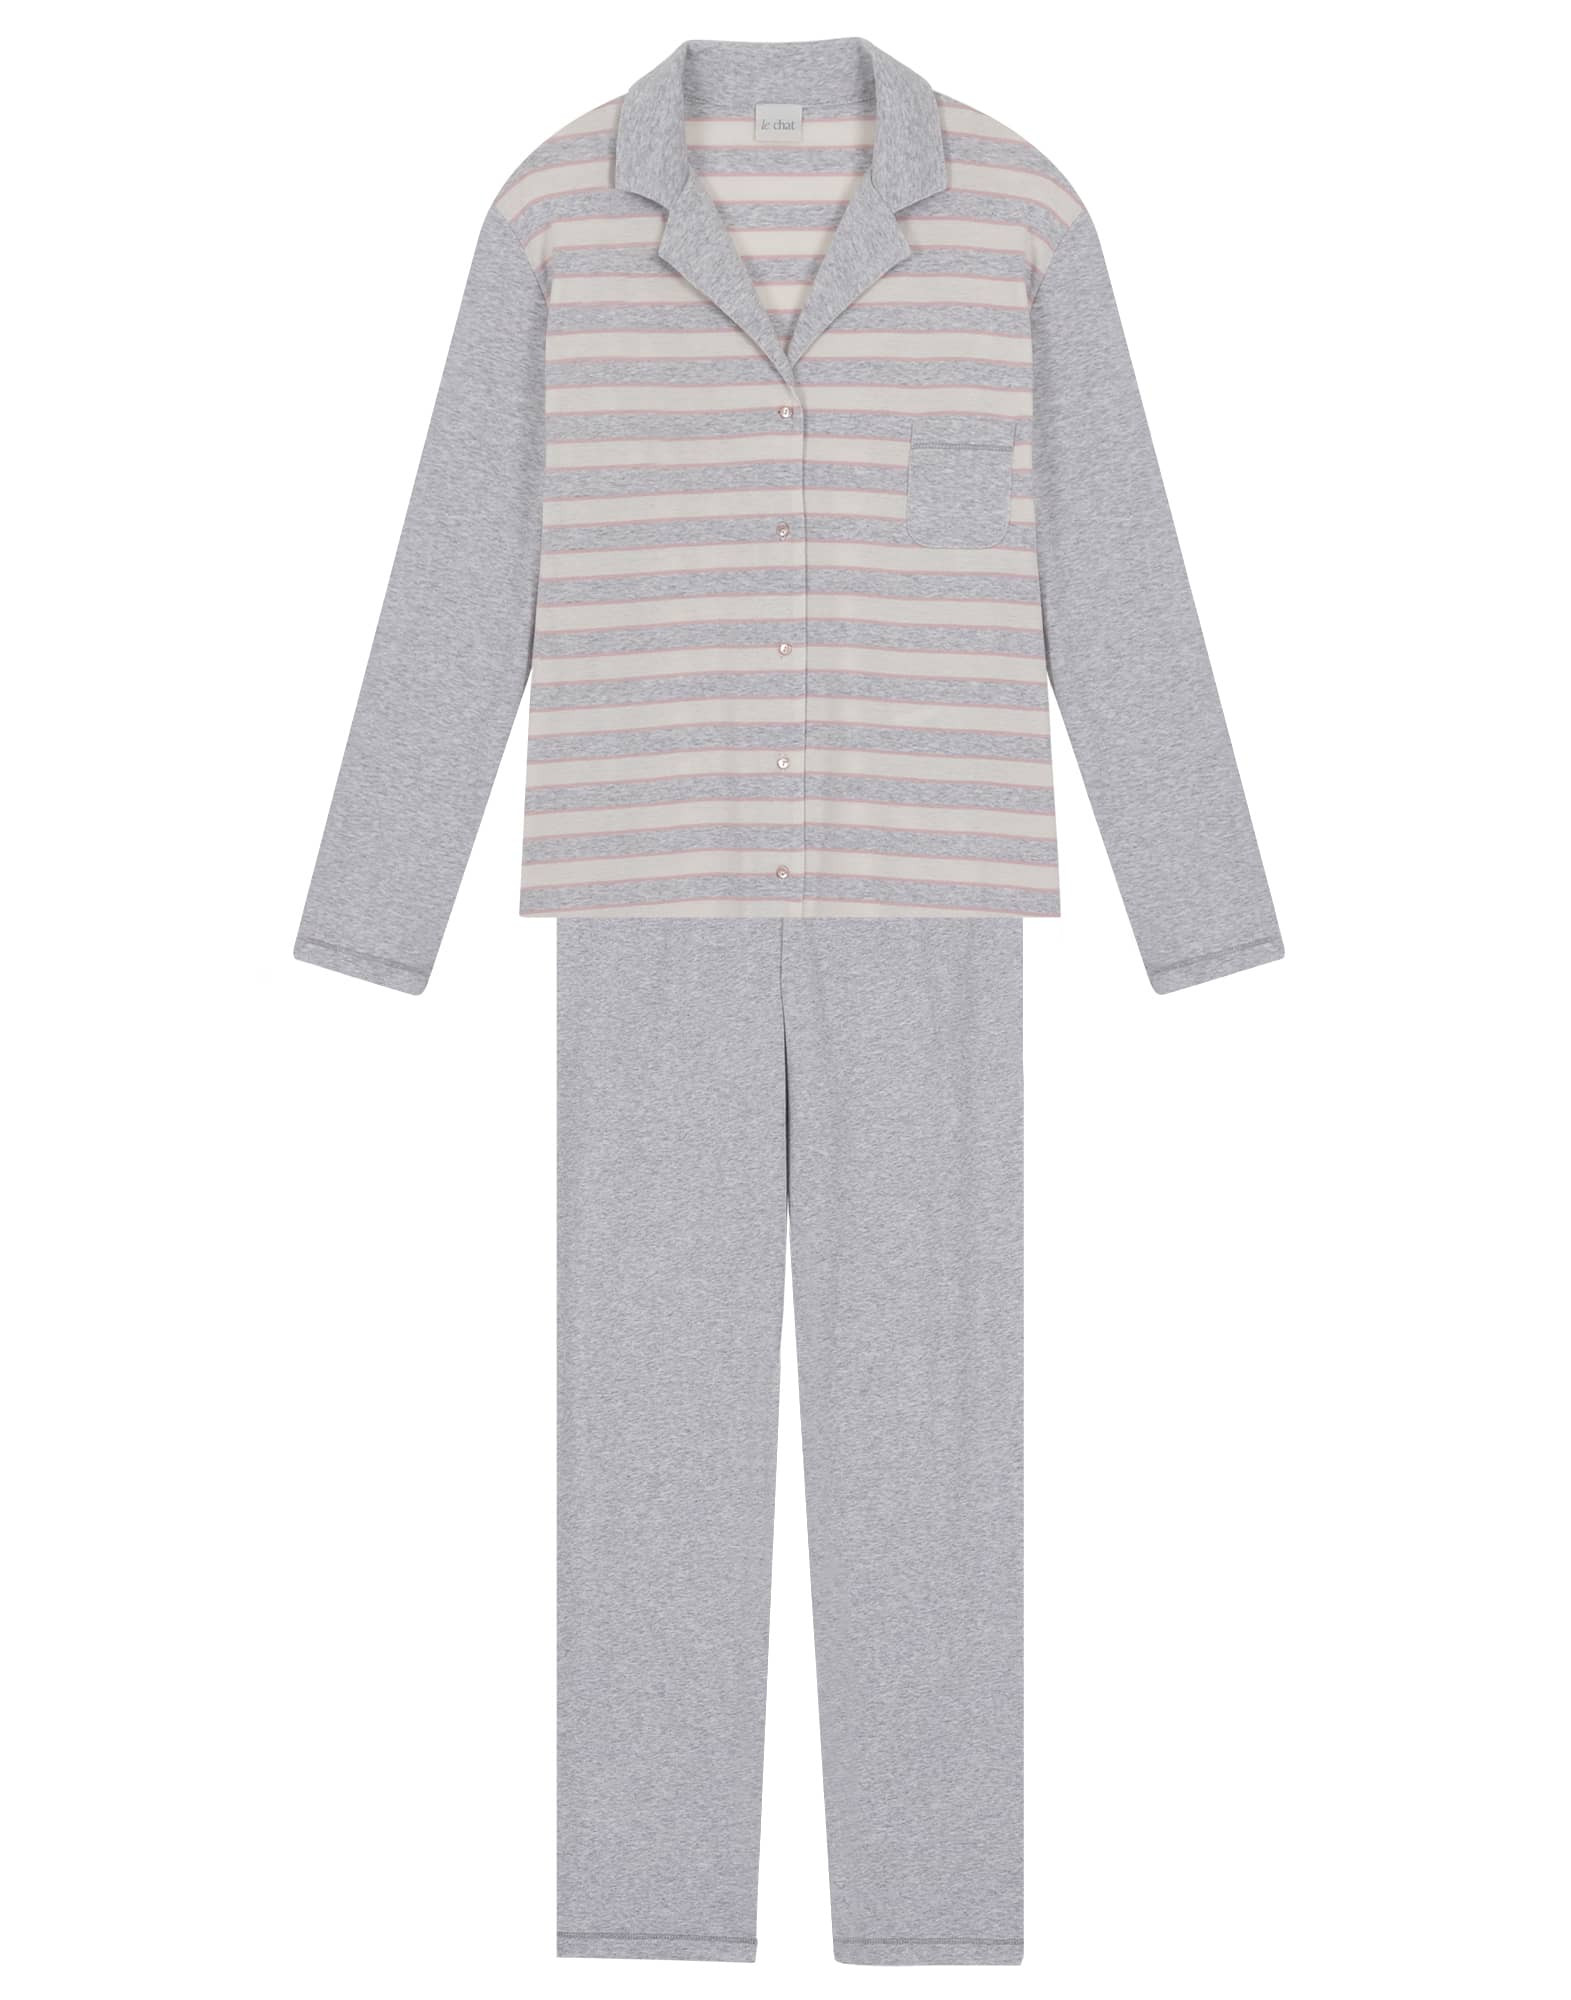 Pyjama homme effet rayures